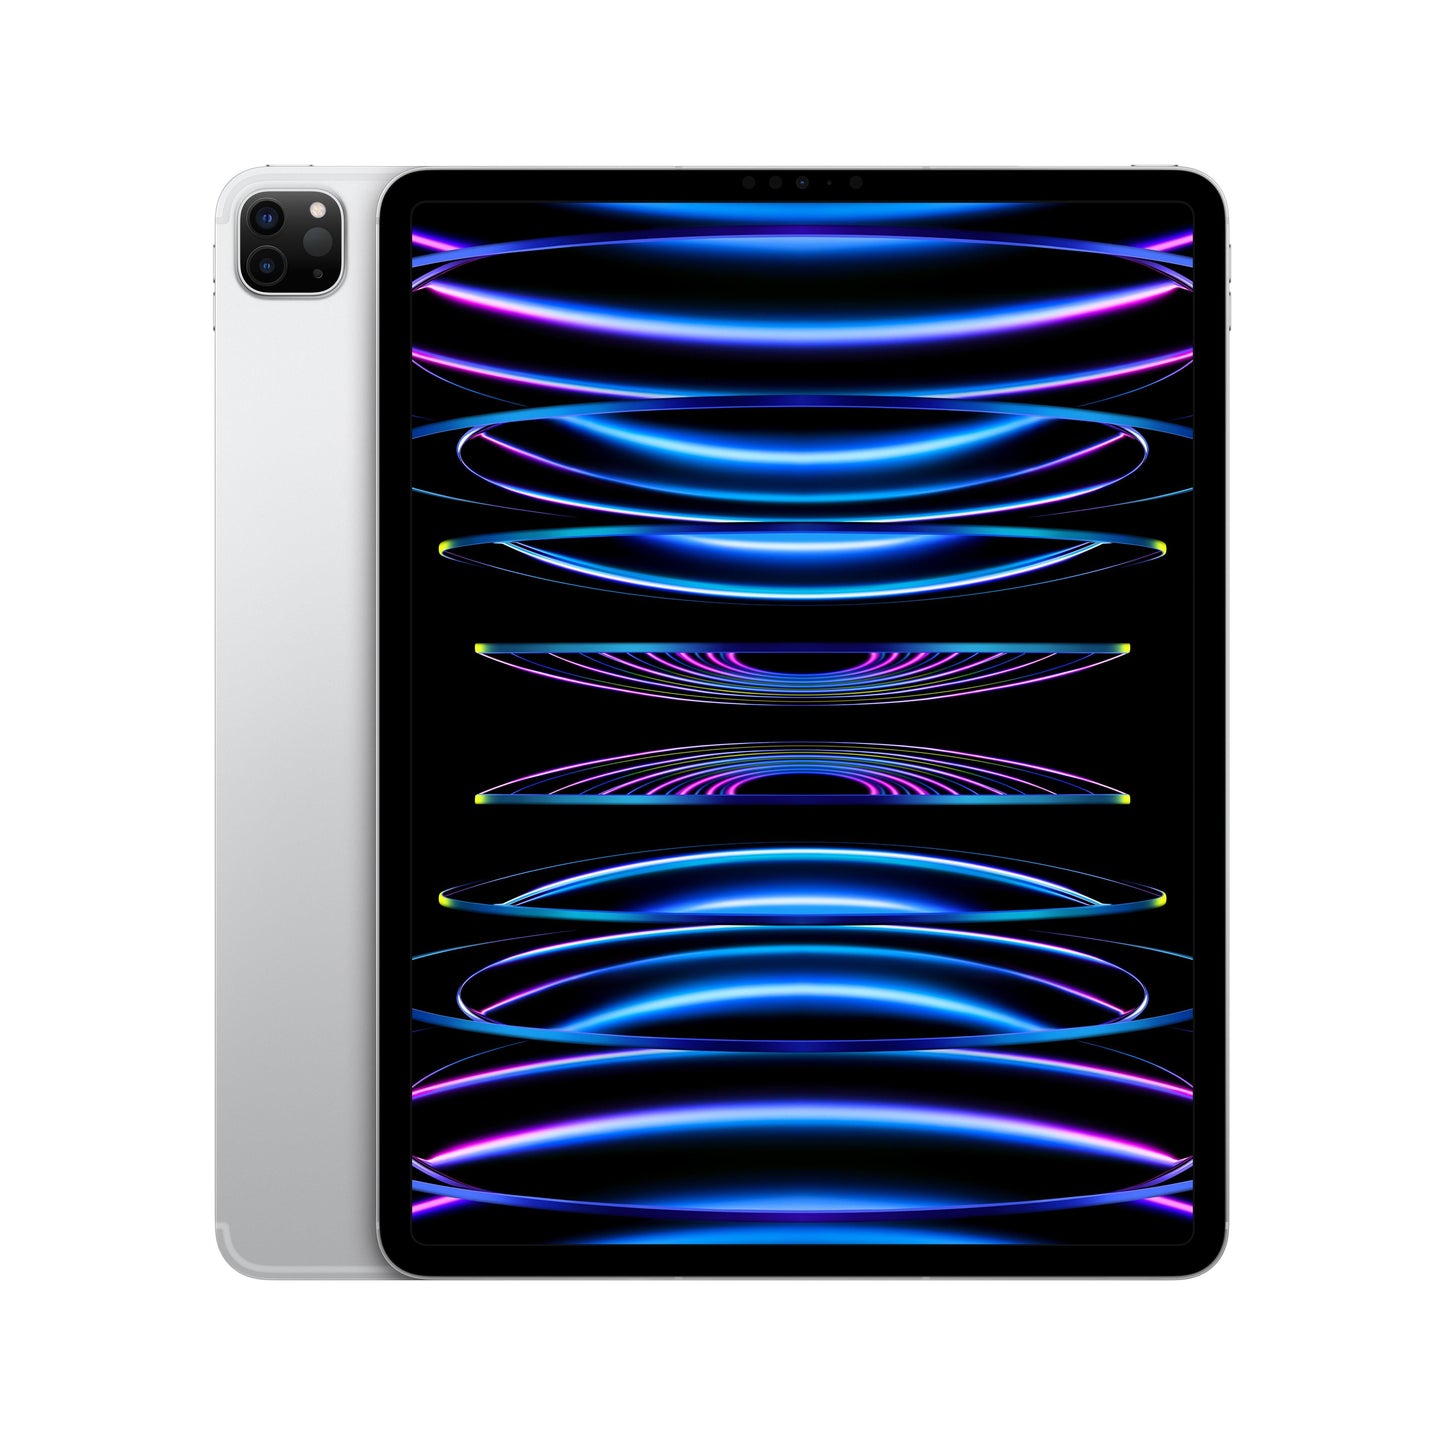 2022 12.9-inch iPad Pro Wi-Fi + Cellular 128GB - Silver (6th generation)